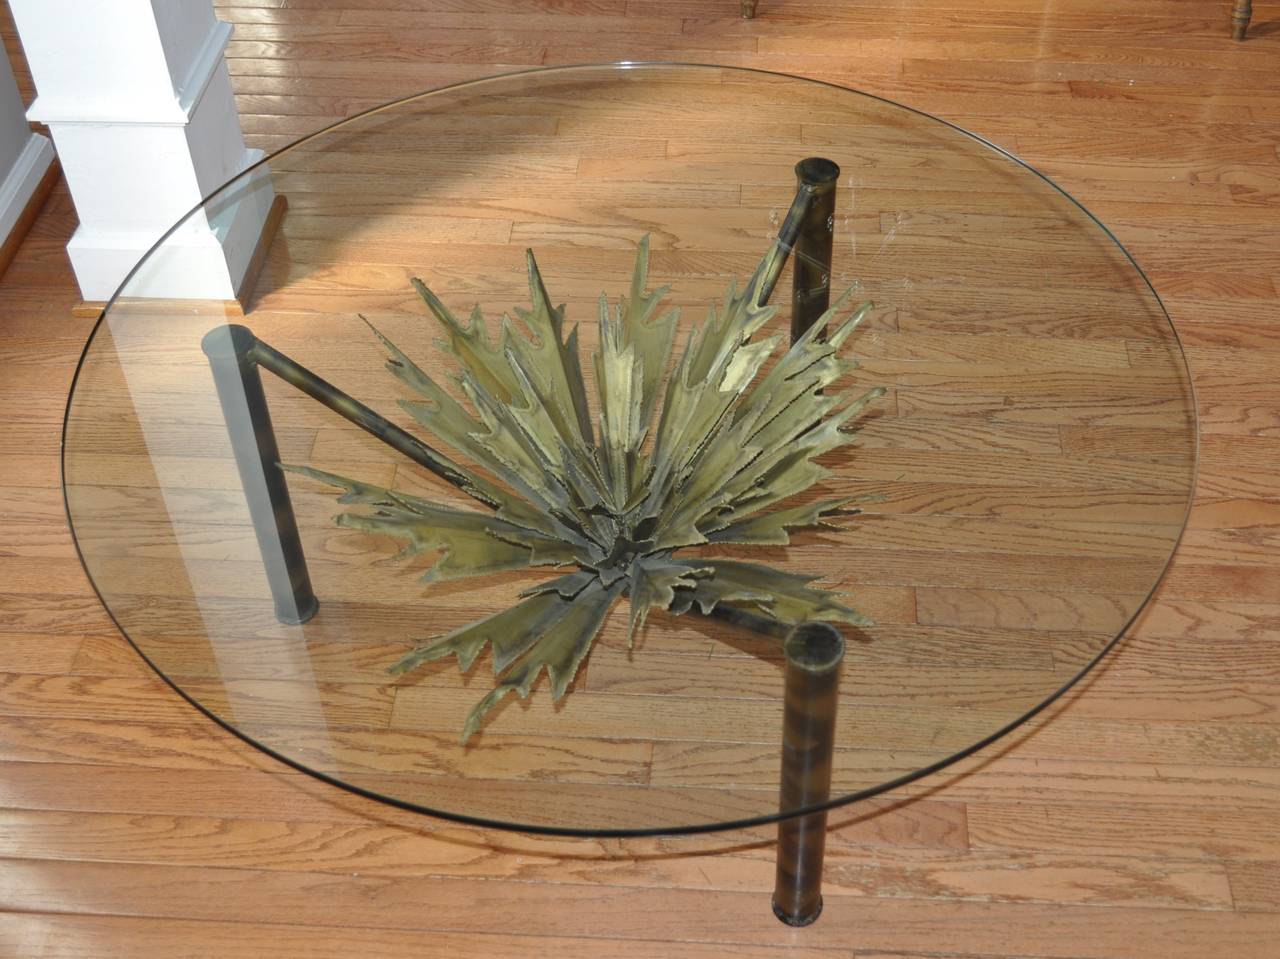 Très rare table de cocktail brutaliste en verre et métal dans le style de Paul Evans et Silas Seandel. Un étonnant soleil sculptural en métal mélangé taillé au chalumeau, aux tons de laiton, de cuivre et d'acier, repose sur une base de table unique